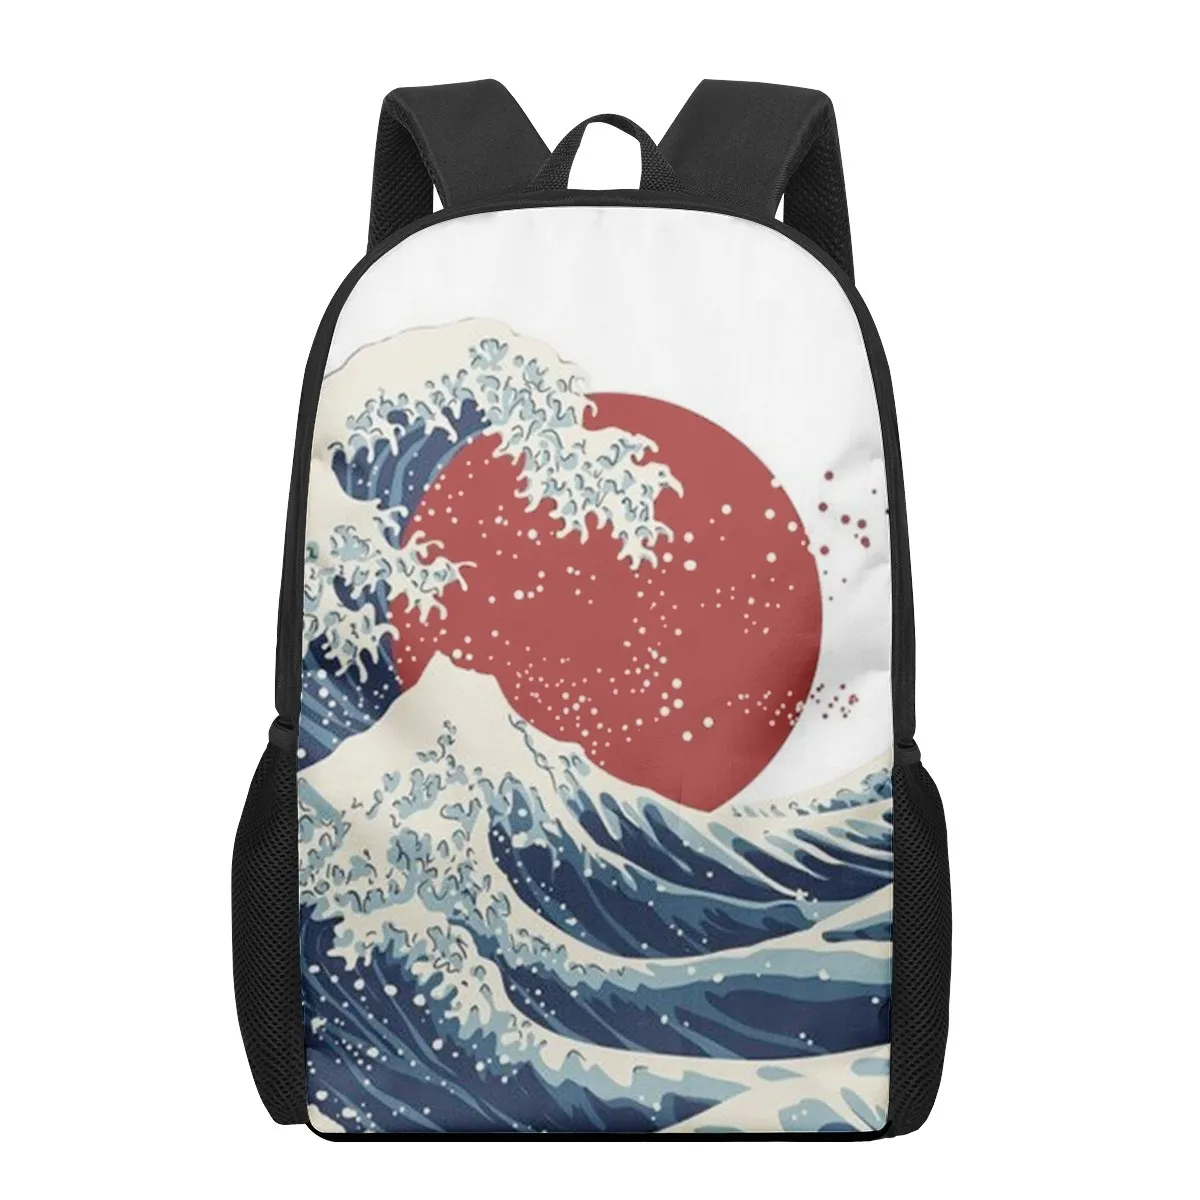 Японская эстетичная школьная сумка с принтом волн для подростков 16 дюймов, школьный рюкзак для мальчиков и девочек, школьная сумка для студ...